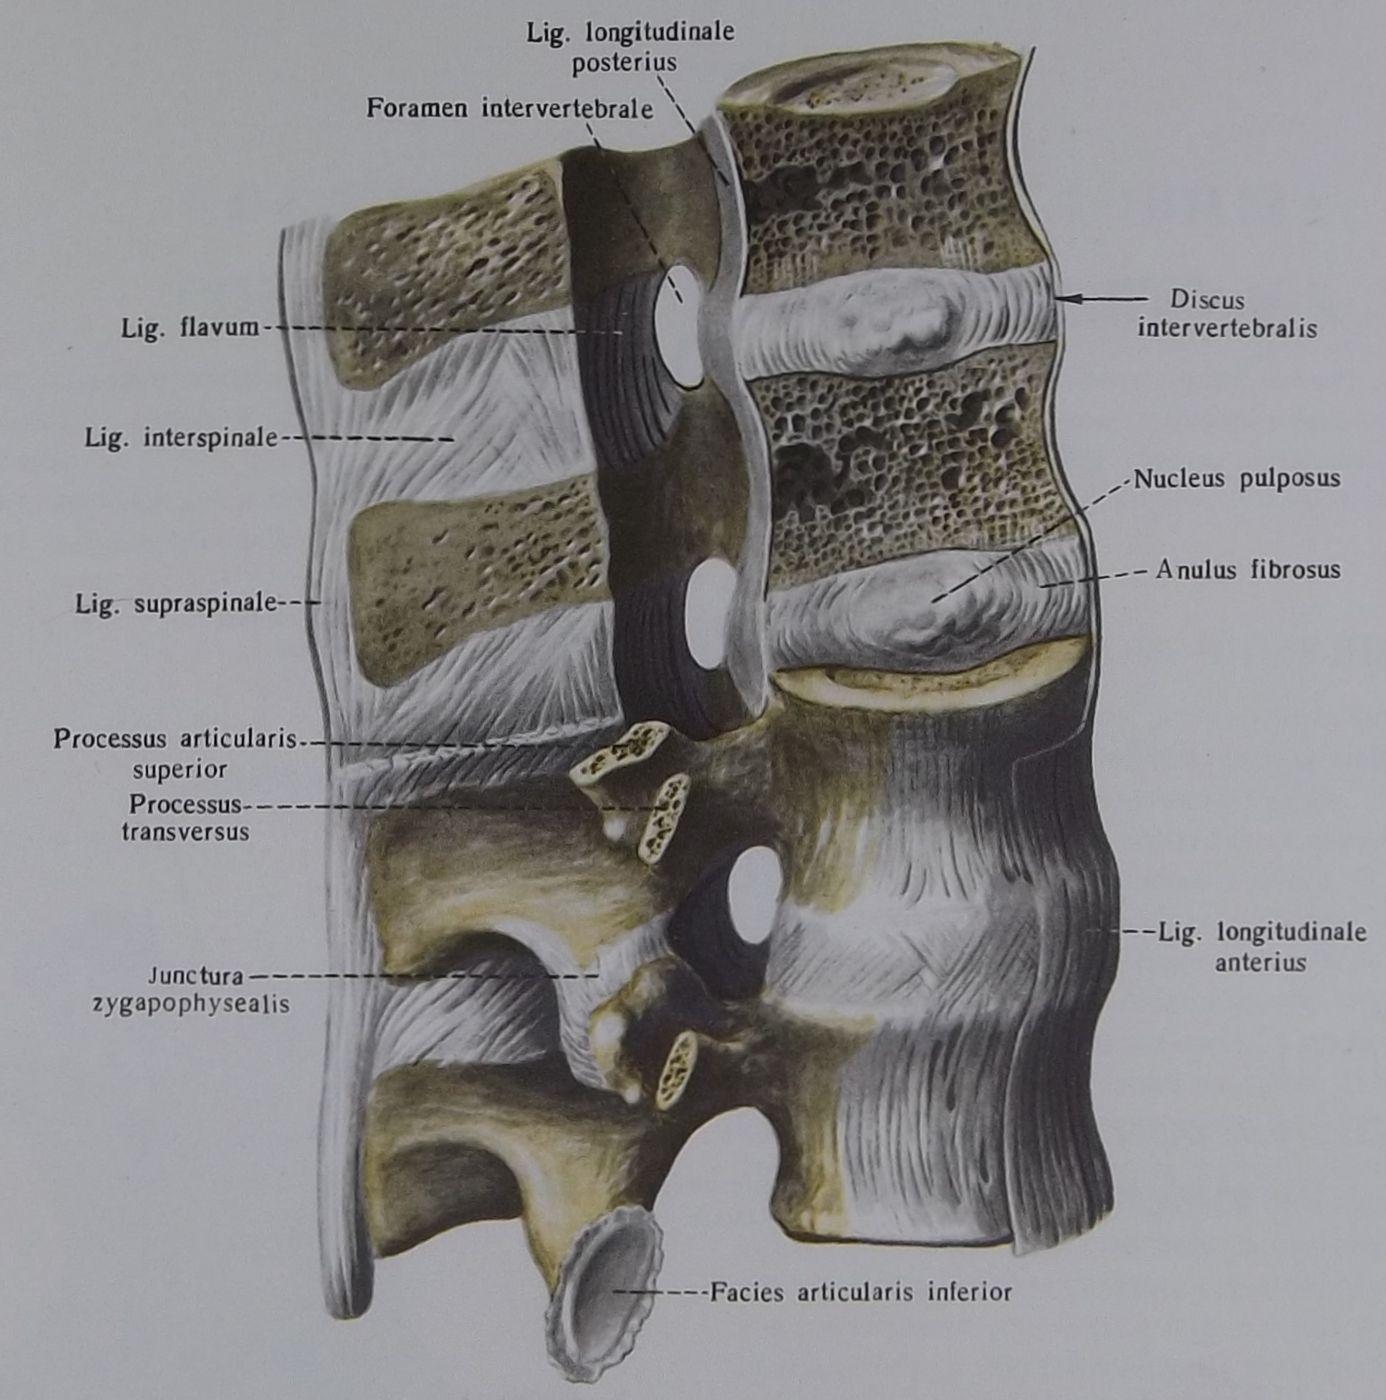 Соединения позвоночника суставы. Передняя продольная связка l2-l5. Межпозвоночные суставы анатомия. Позвоночный столб соединения позвонков. Задняя продольная связка (Lig. Longitudinale posterius).